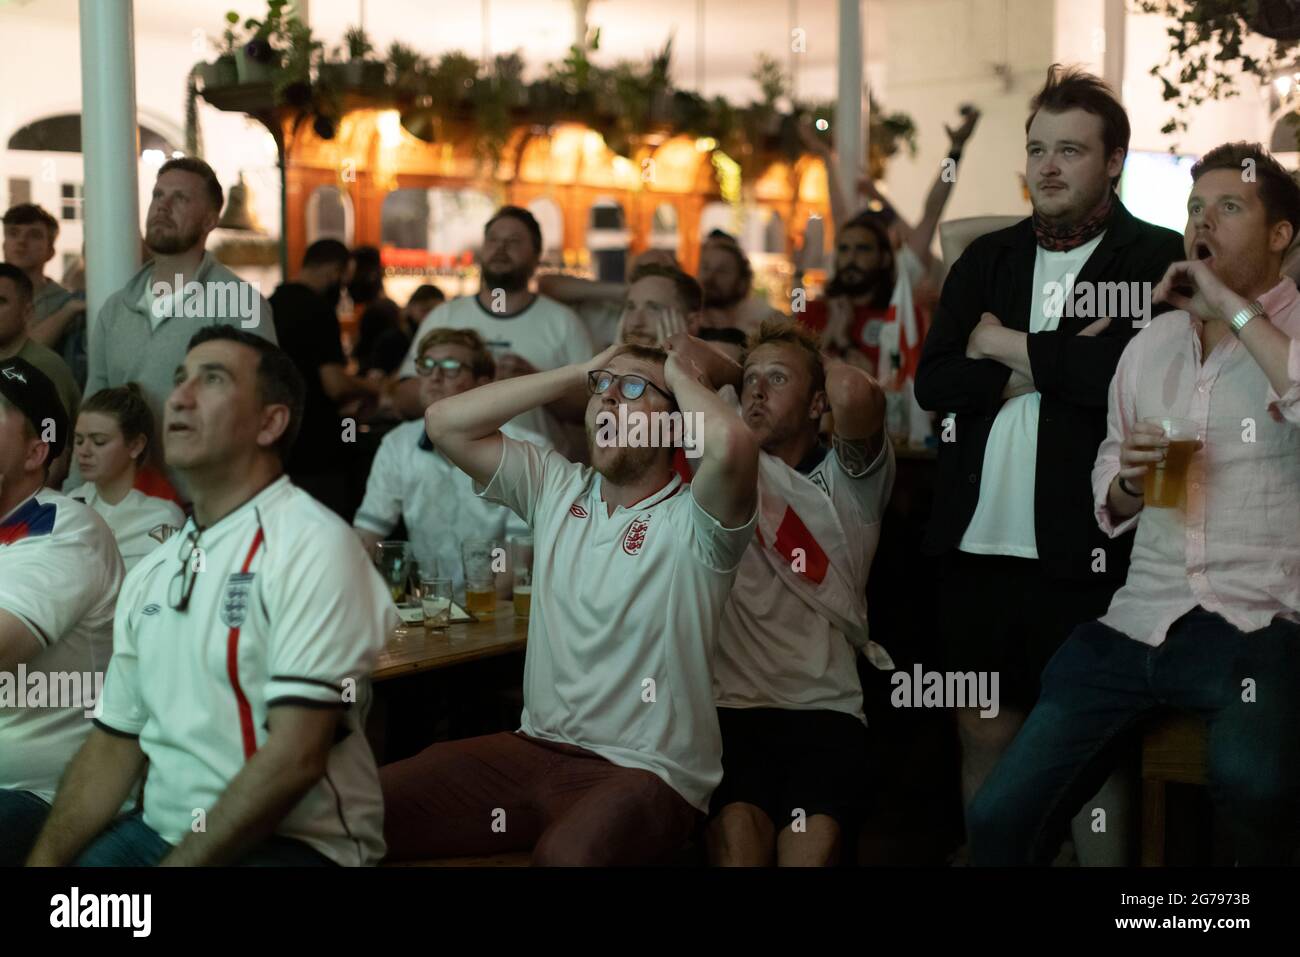 Les fans de football anglais regardent la finale EURO20 entre l'Angleterre et l'Italie dans un pub à Vauxhall, Londres, Angleterre, Royaume-Uni Banque D'Images